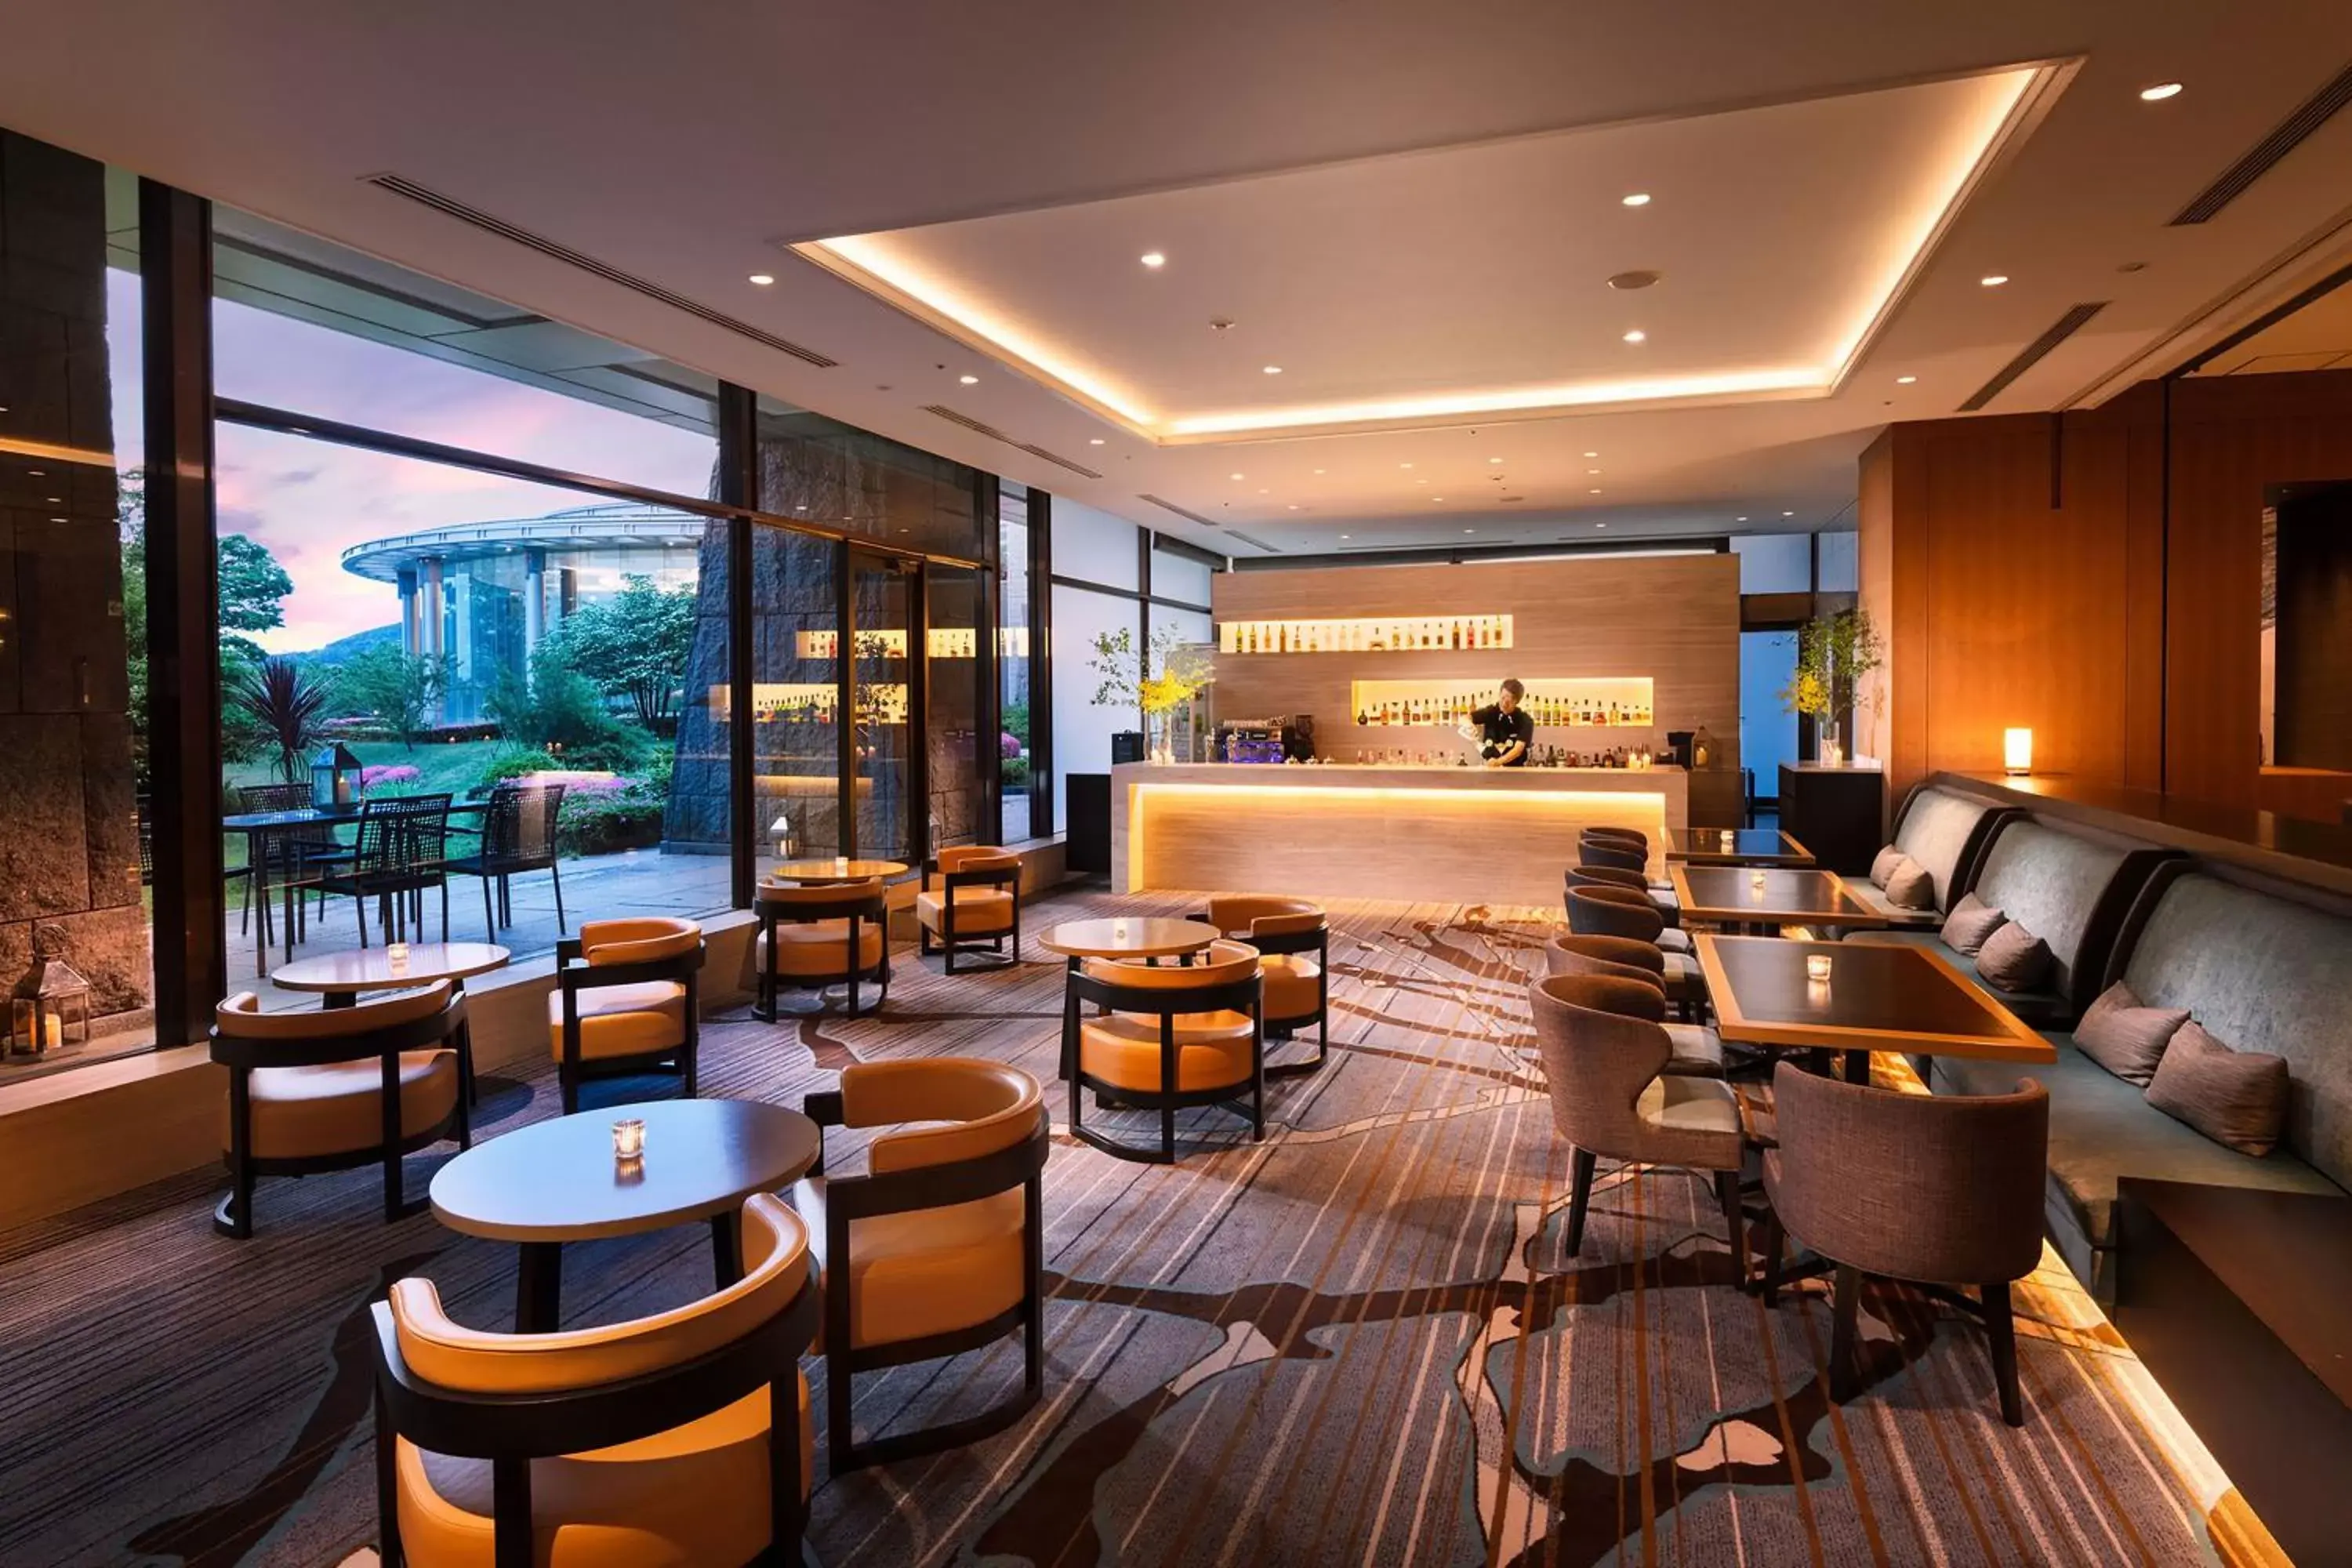 Restaurant/places to eat, Lounge/Bar in Hilton Odawara Resort & Spa